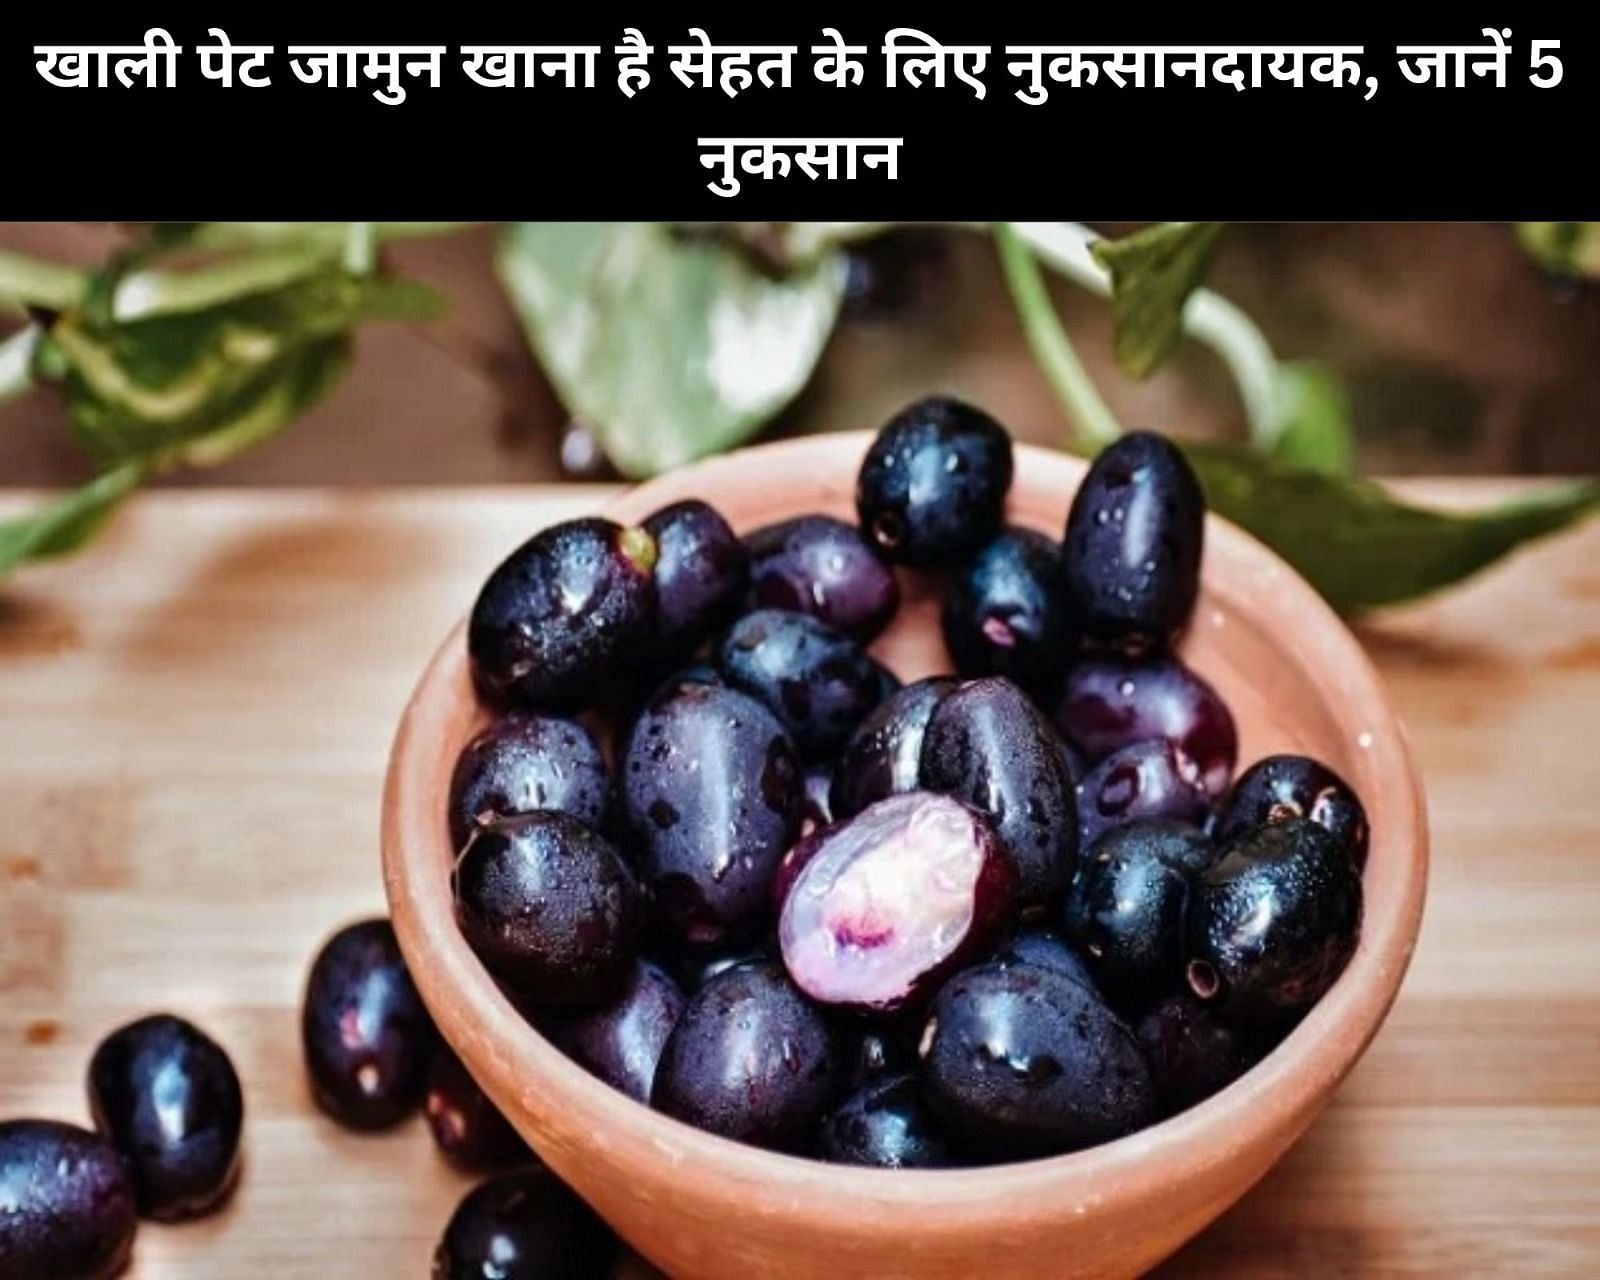 खाली पेट जामुन खाना है सेहत के लिए नुकसानदायक, जानें 5 नुकसान (फोटो - sportskeeda hindi)